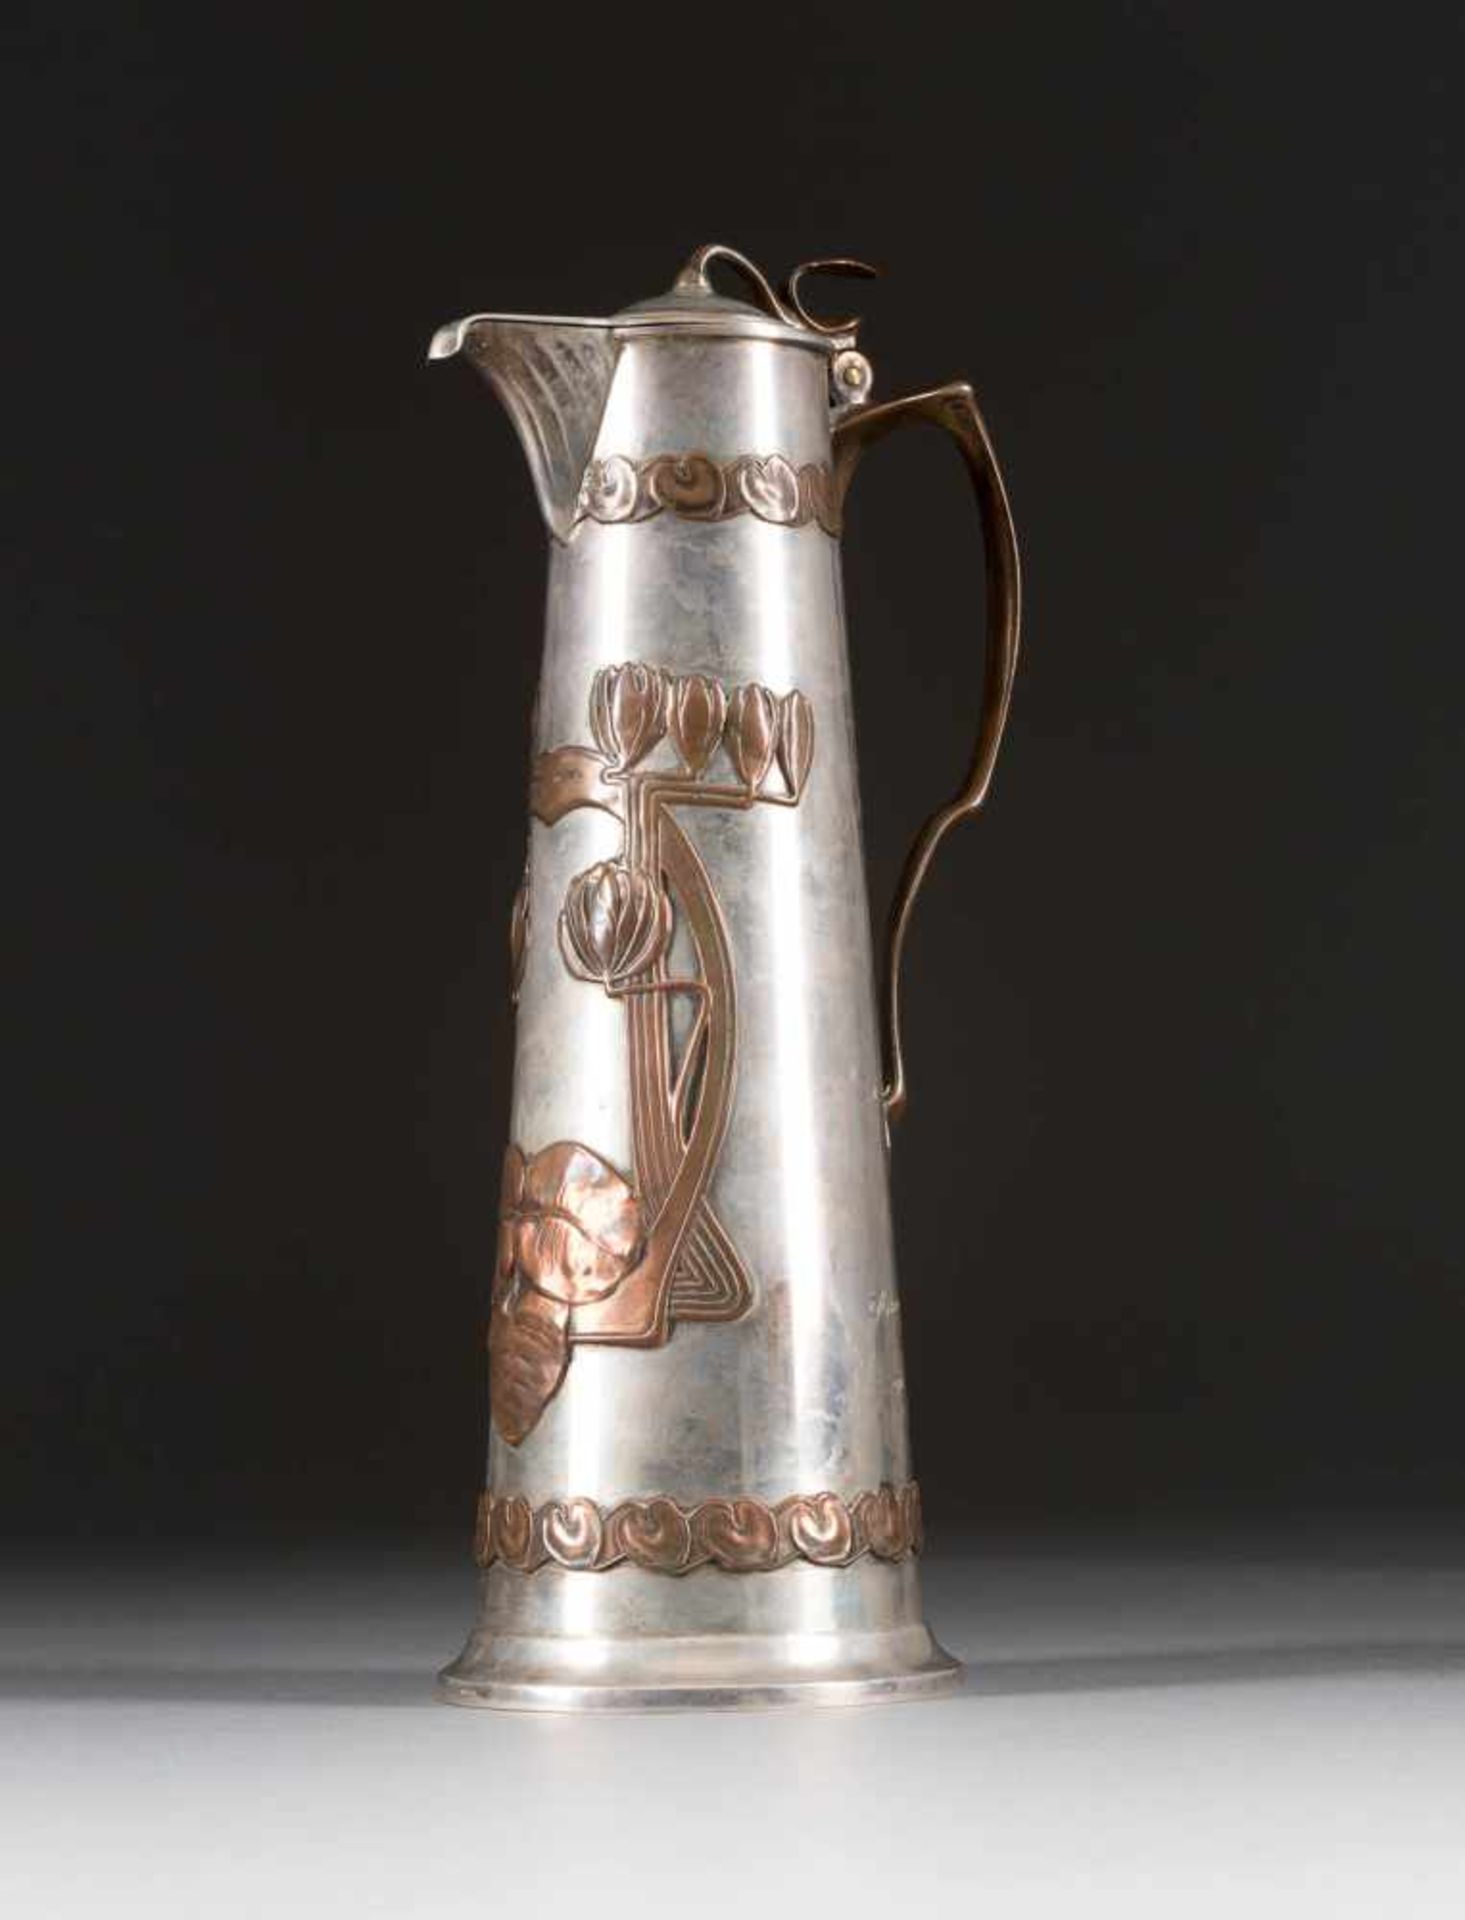 GROSSE JUGENDSTIL-SCHENKKANNE Um 1900 Silber, Kupferapplikationen. H. 33 cm, 1111 g. Pseudo-